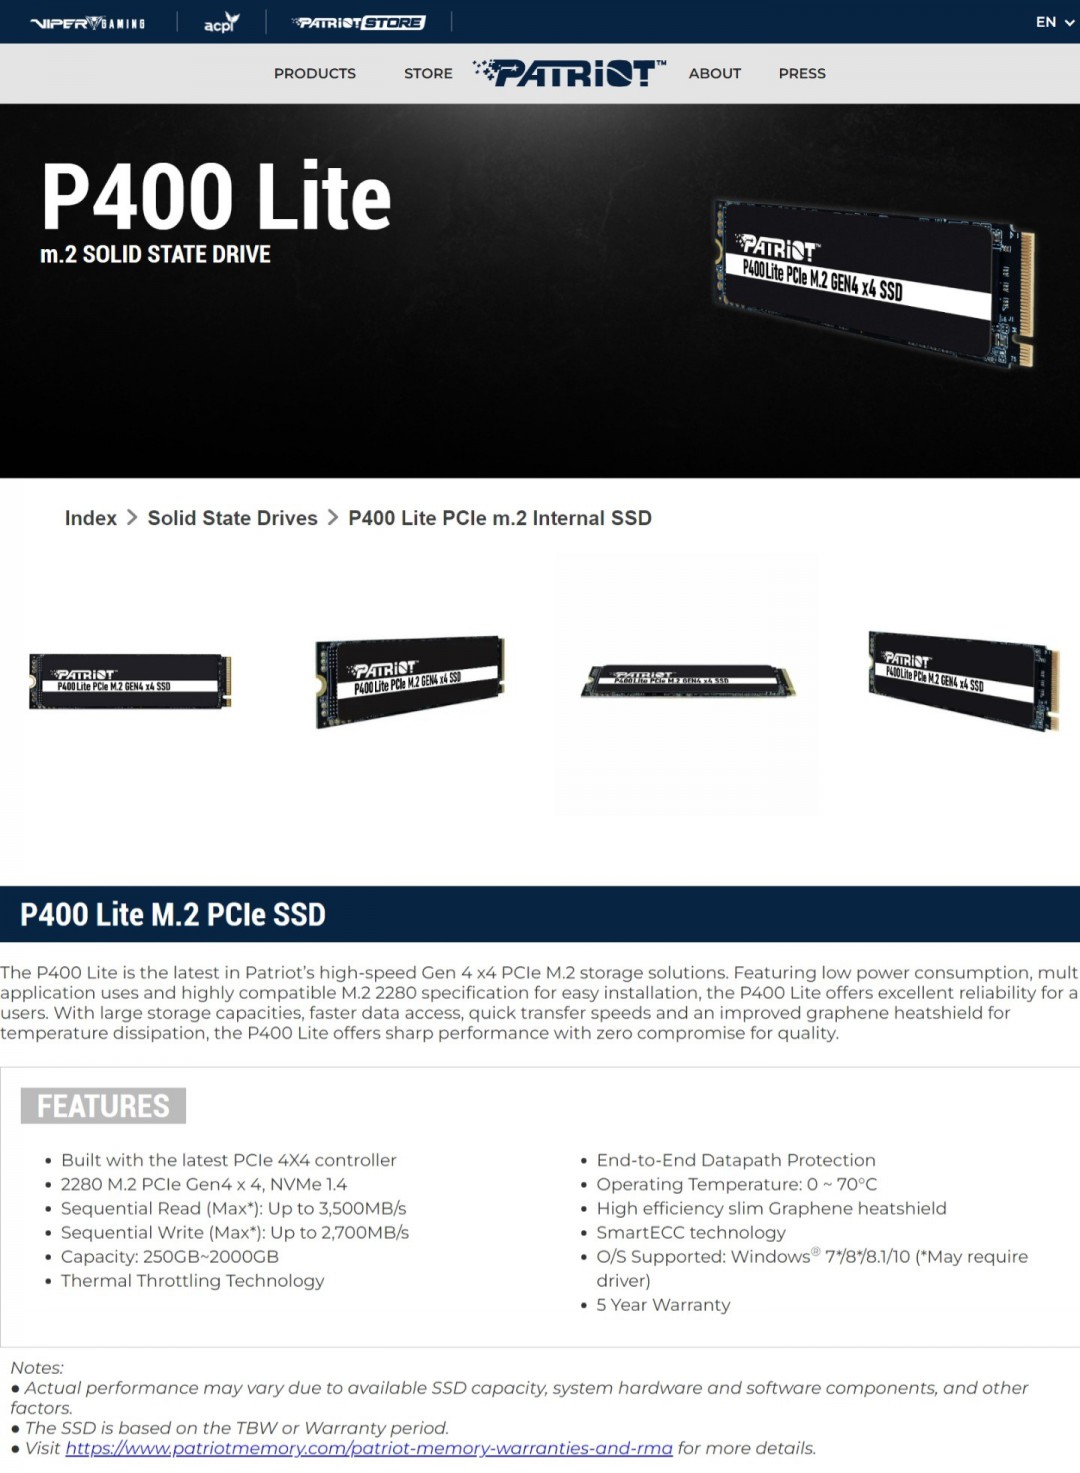  Patriot P400 Lite PCIe Gen 4 x4 m.2 Internal SSD 500GB Review